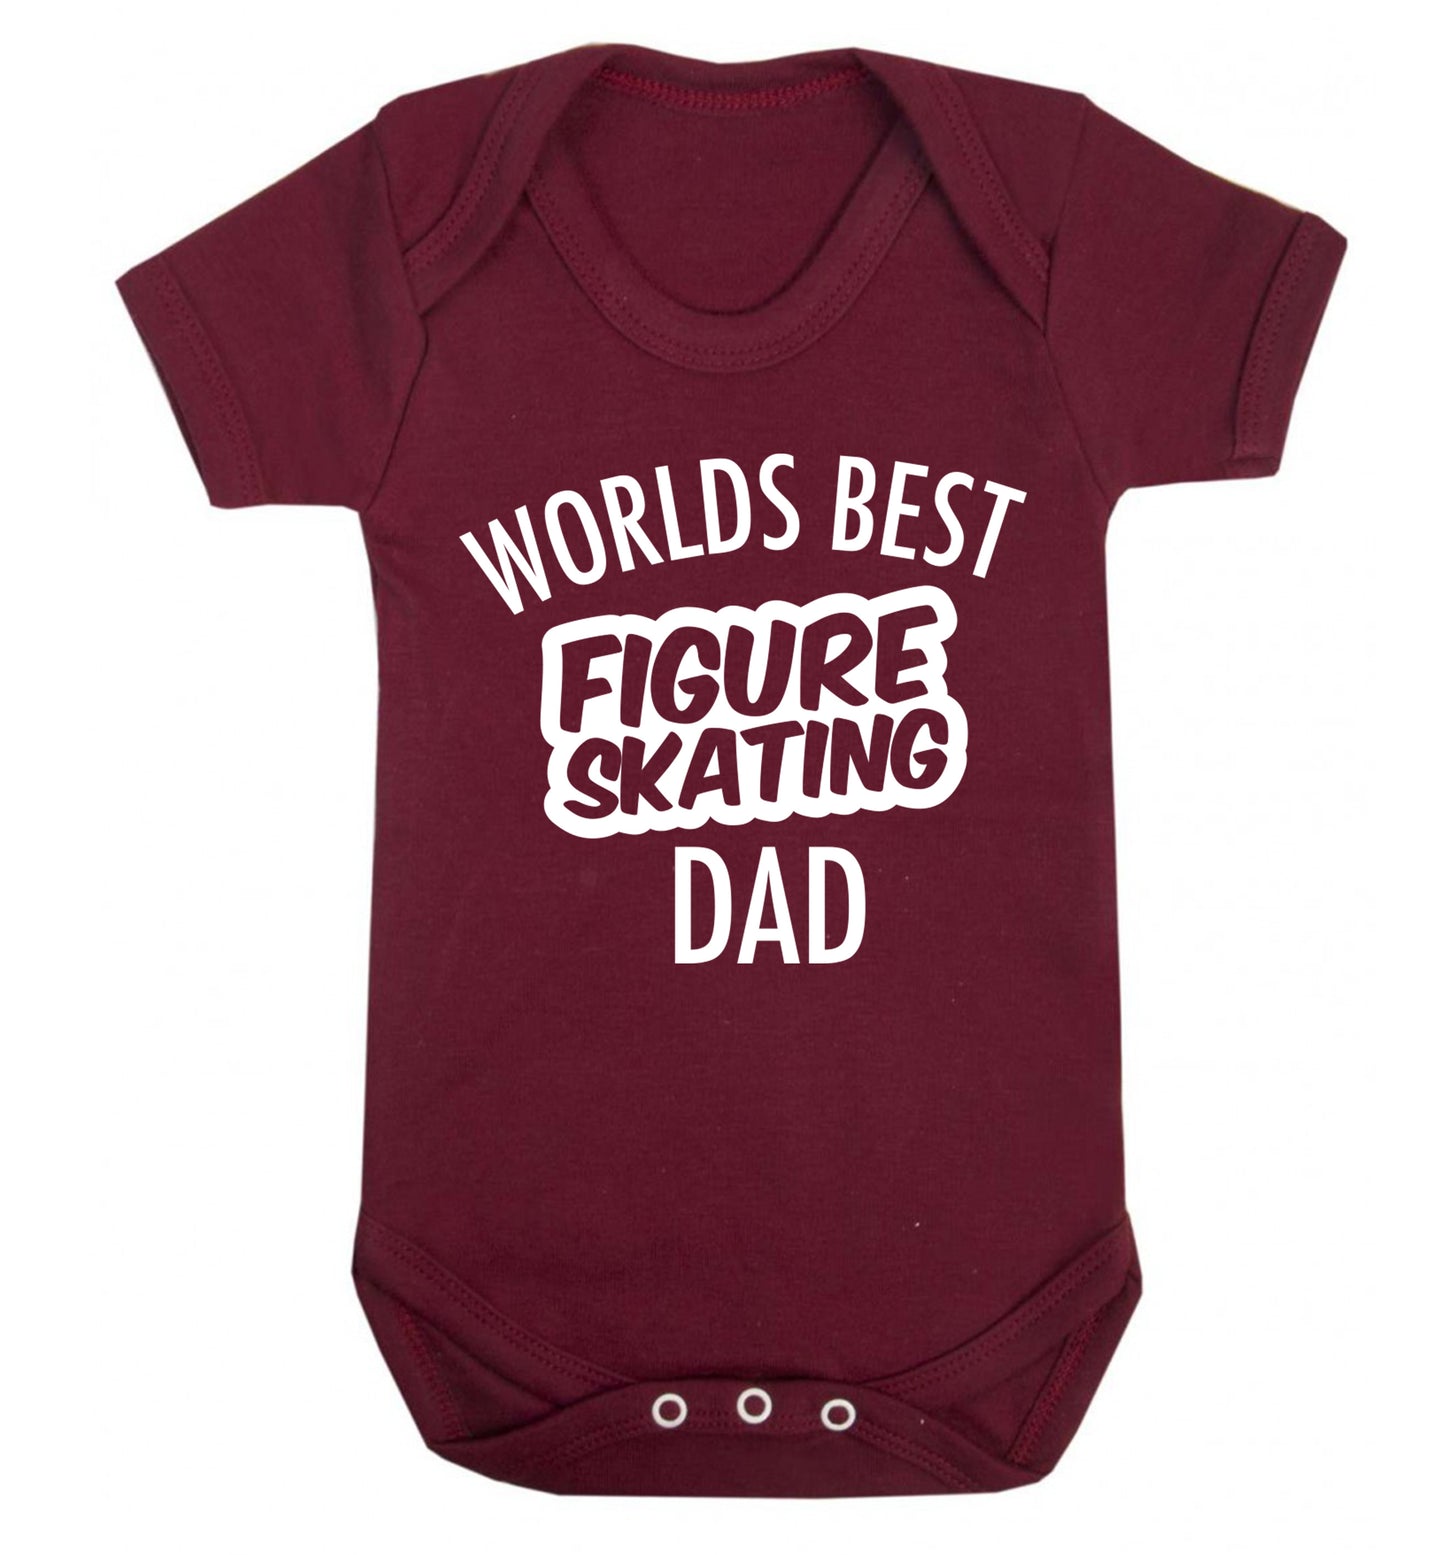 Worlds best figure skating dad Baby Vest maroon 18-24 months